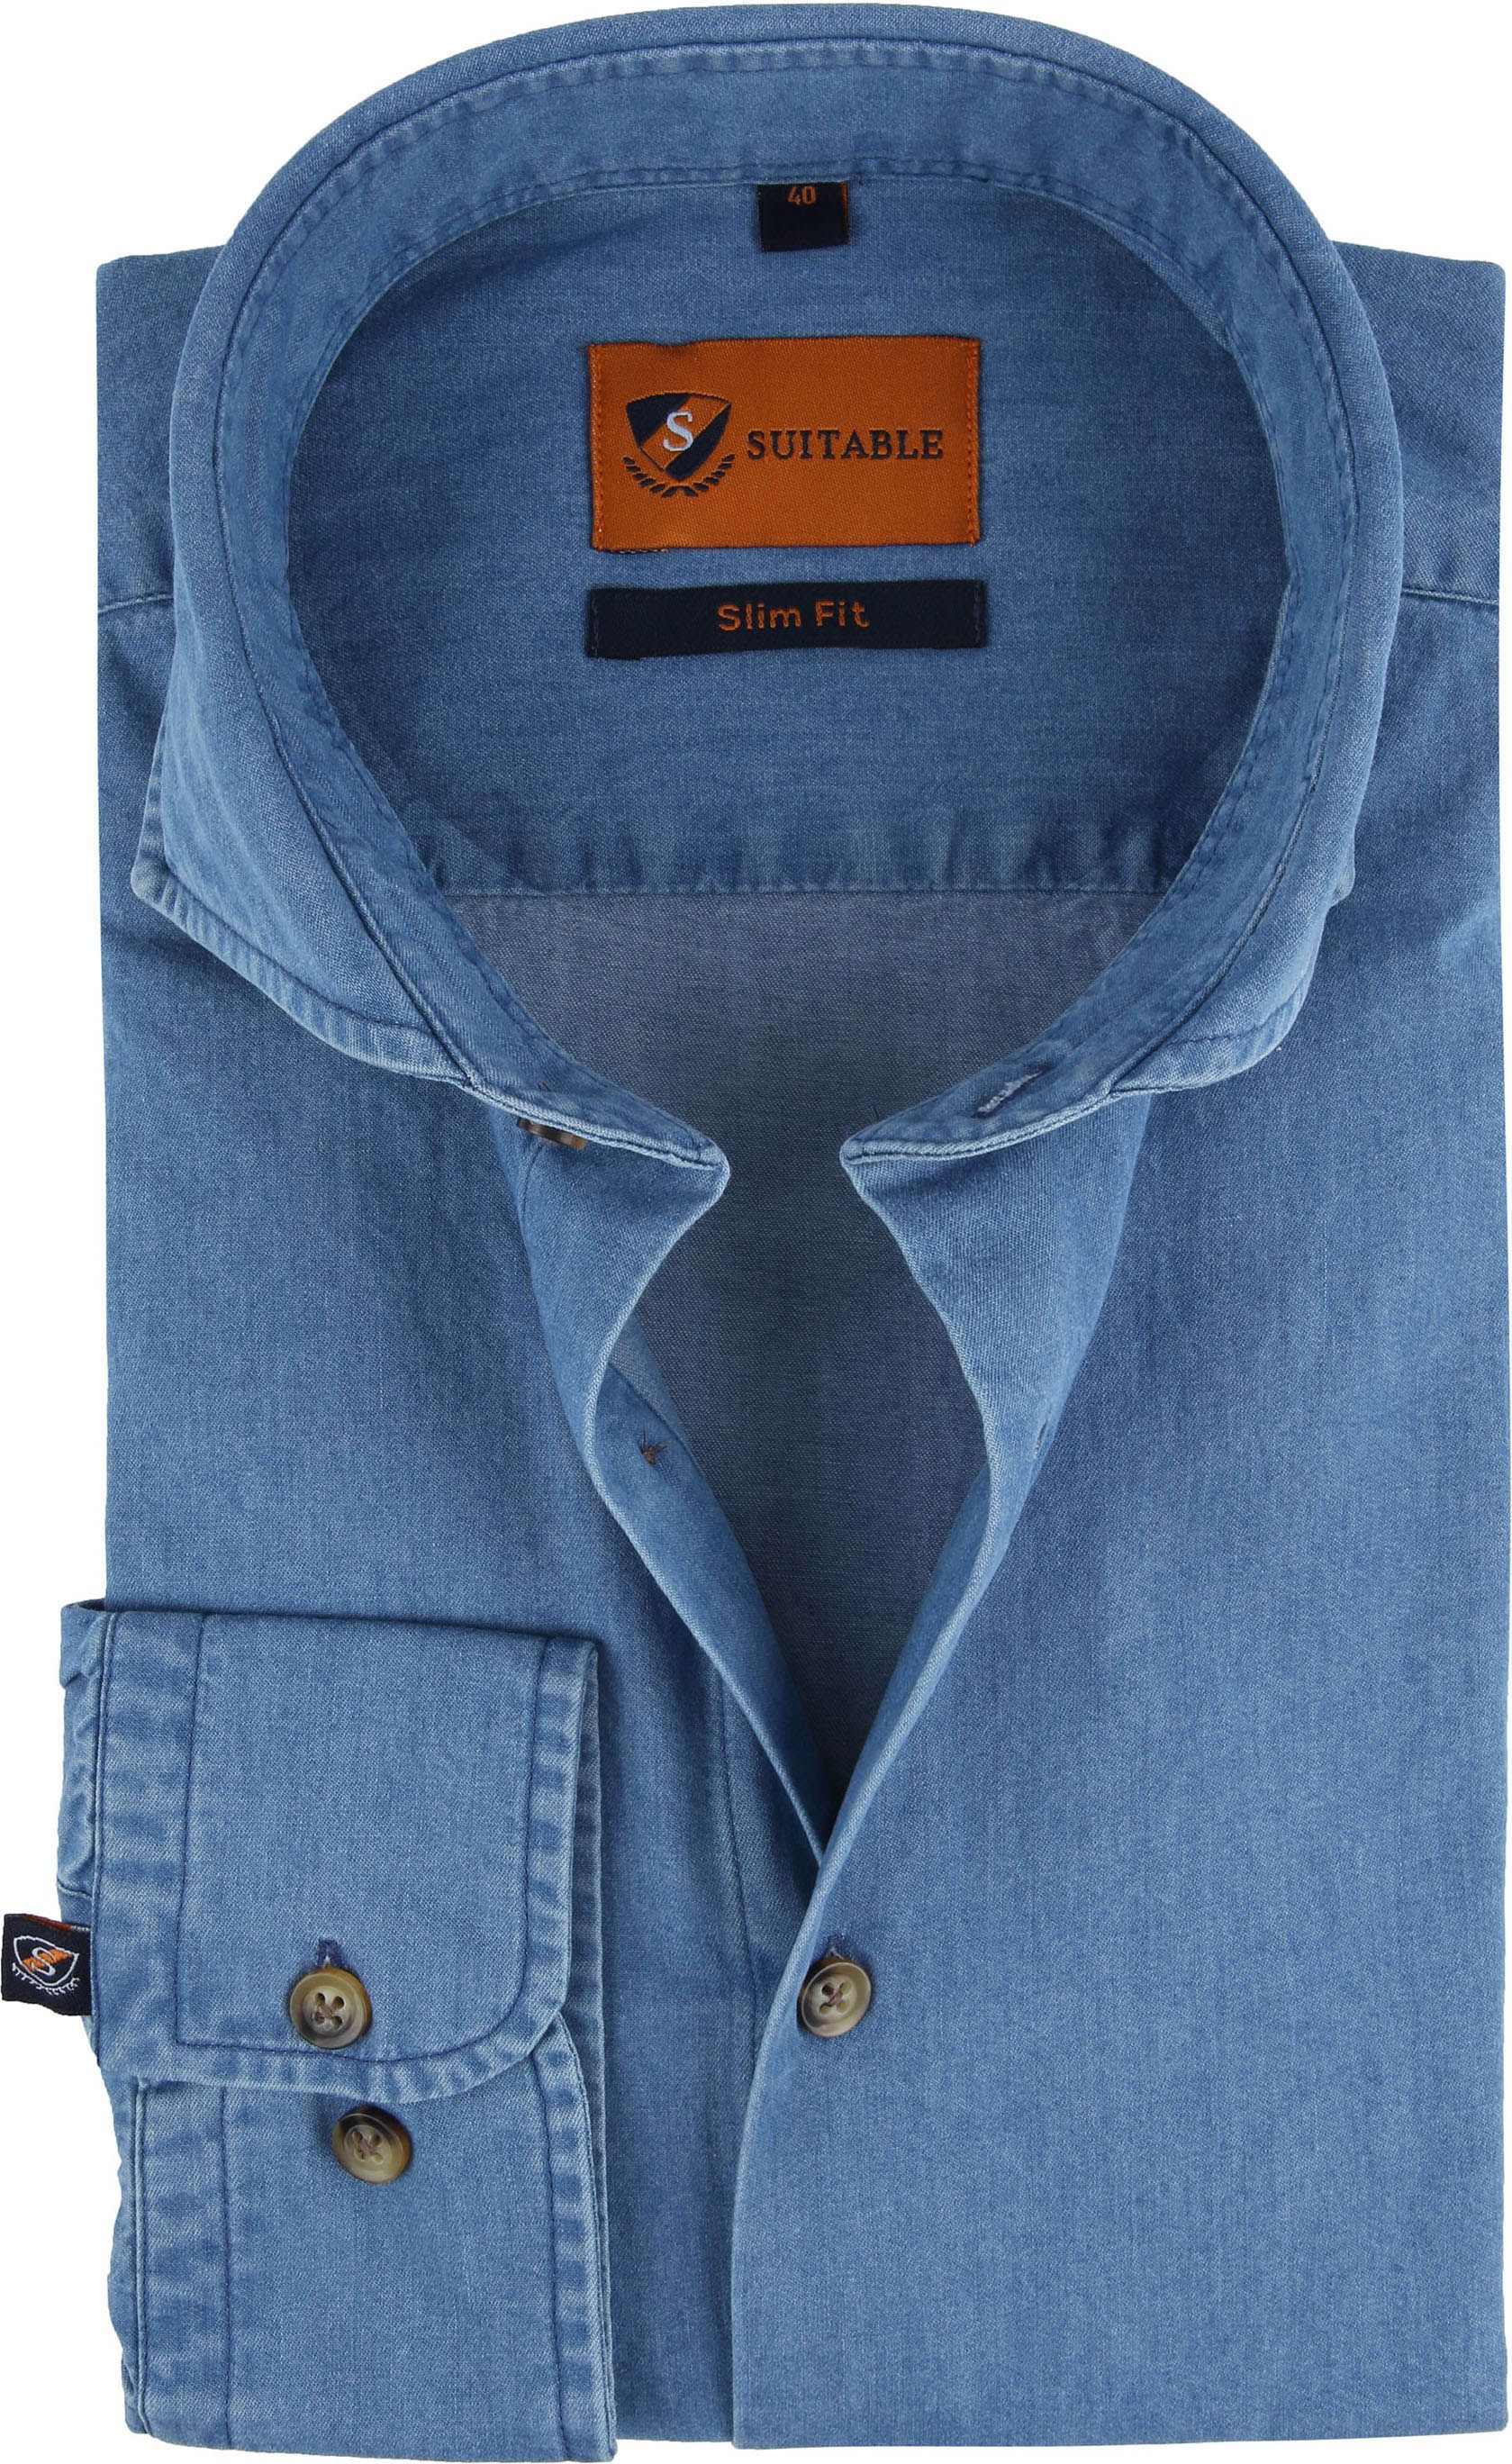 Suitable Shirt Light Denim 156-7 Blue size 16 1/2